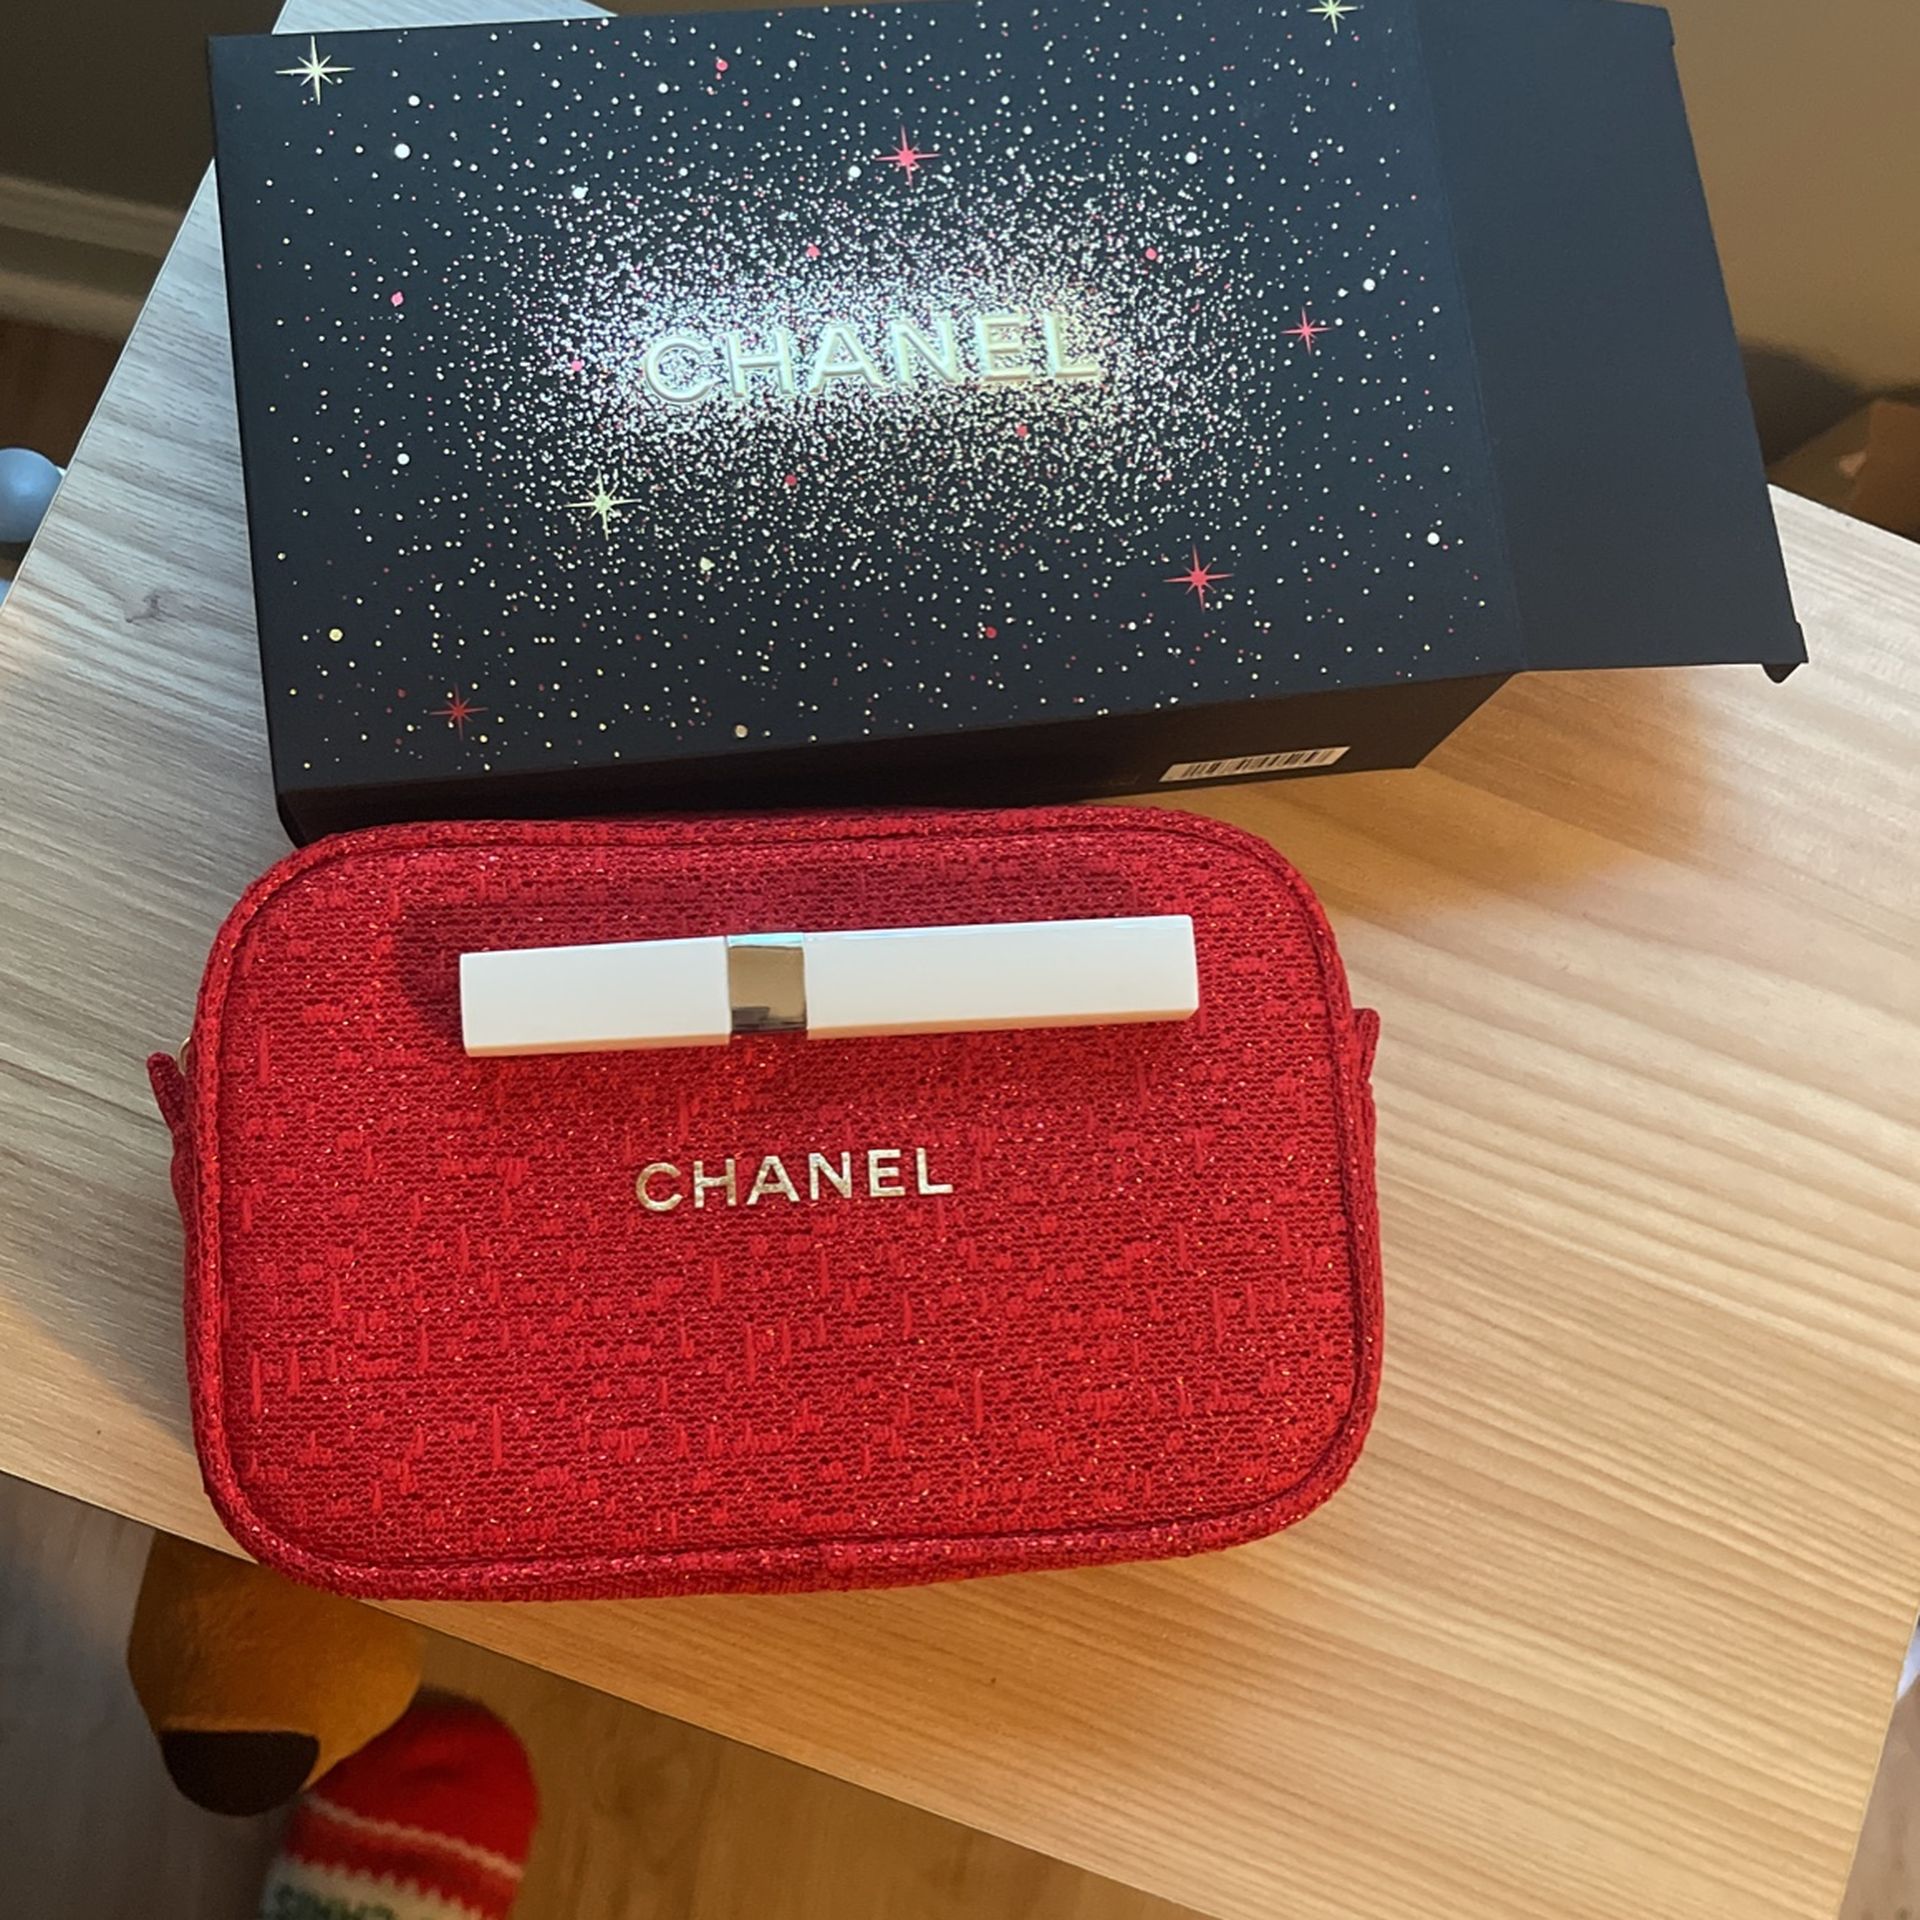 Chanel Makeup Set/makeup Bag